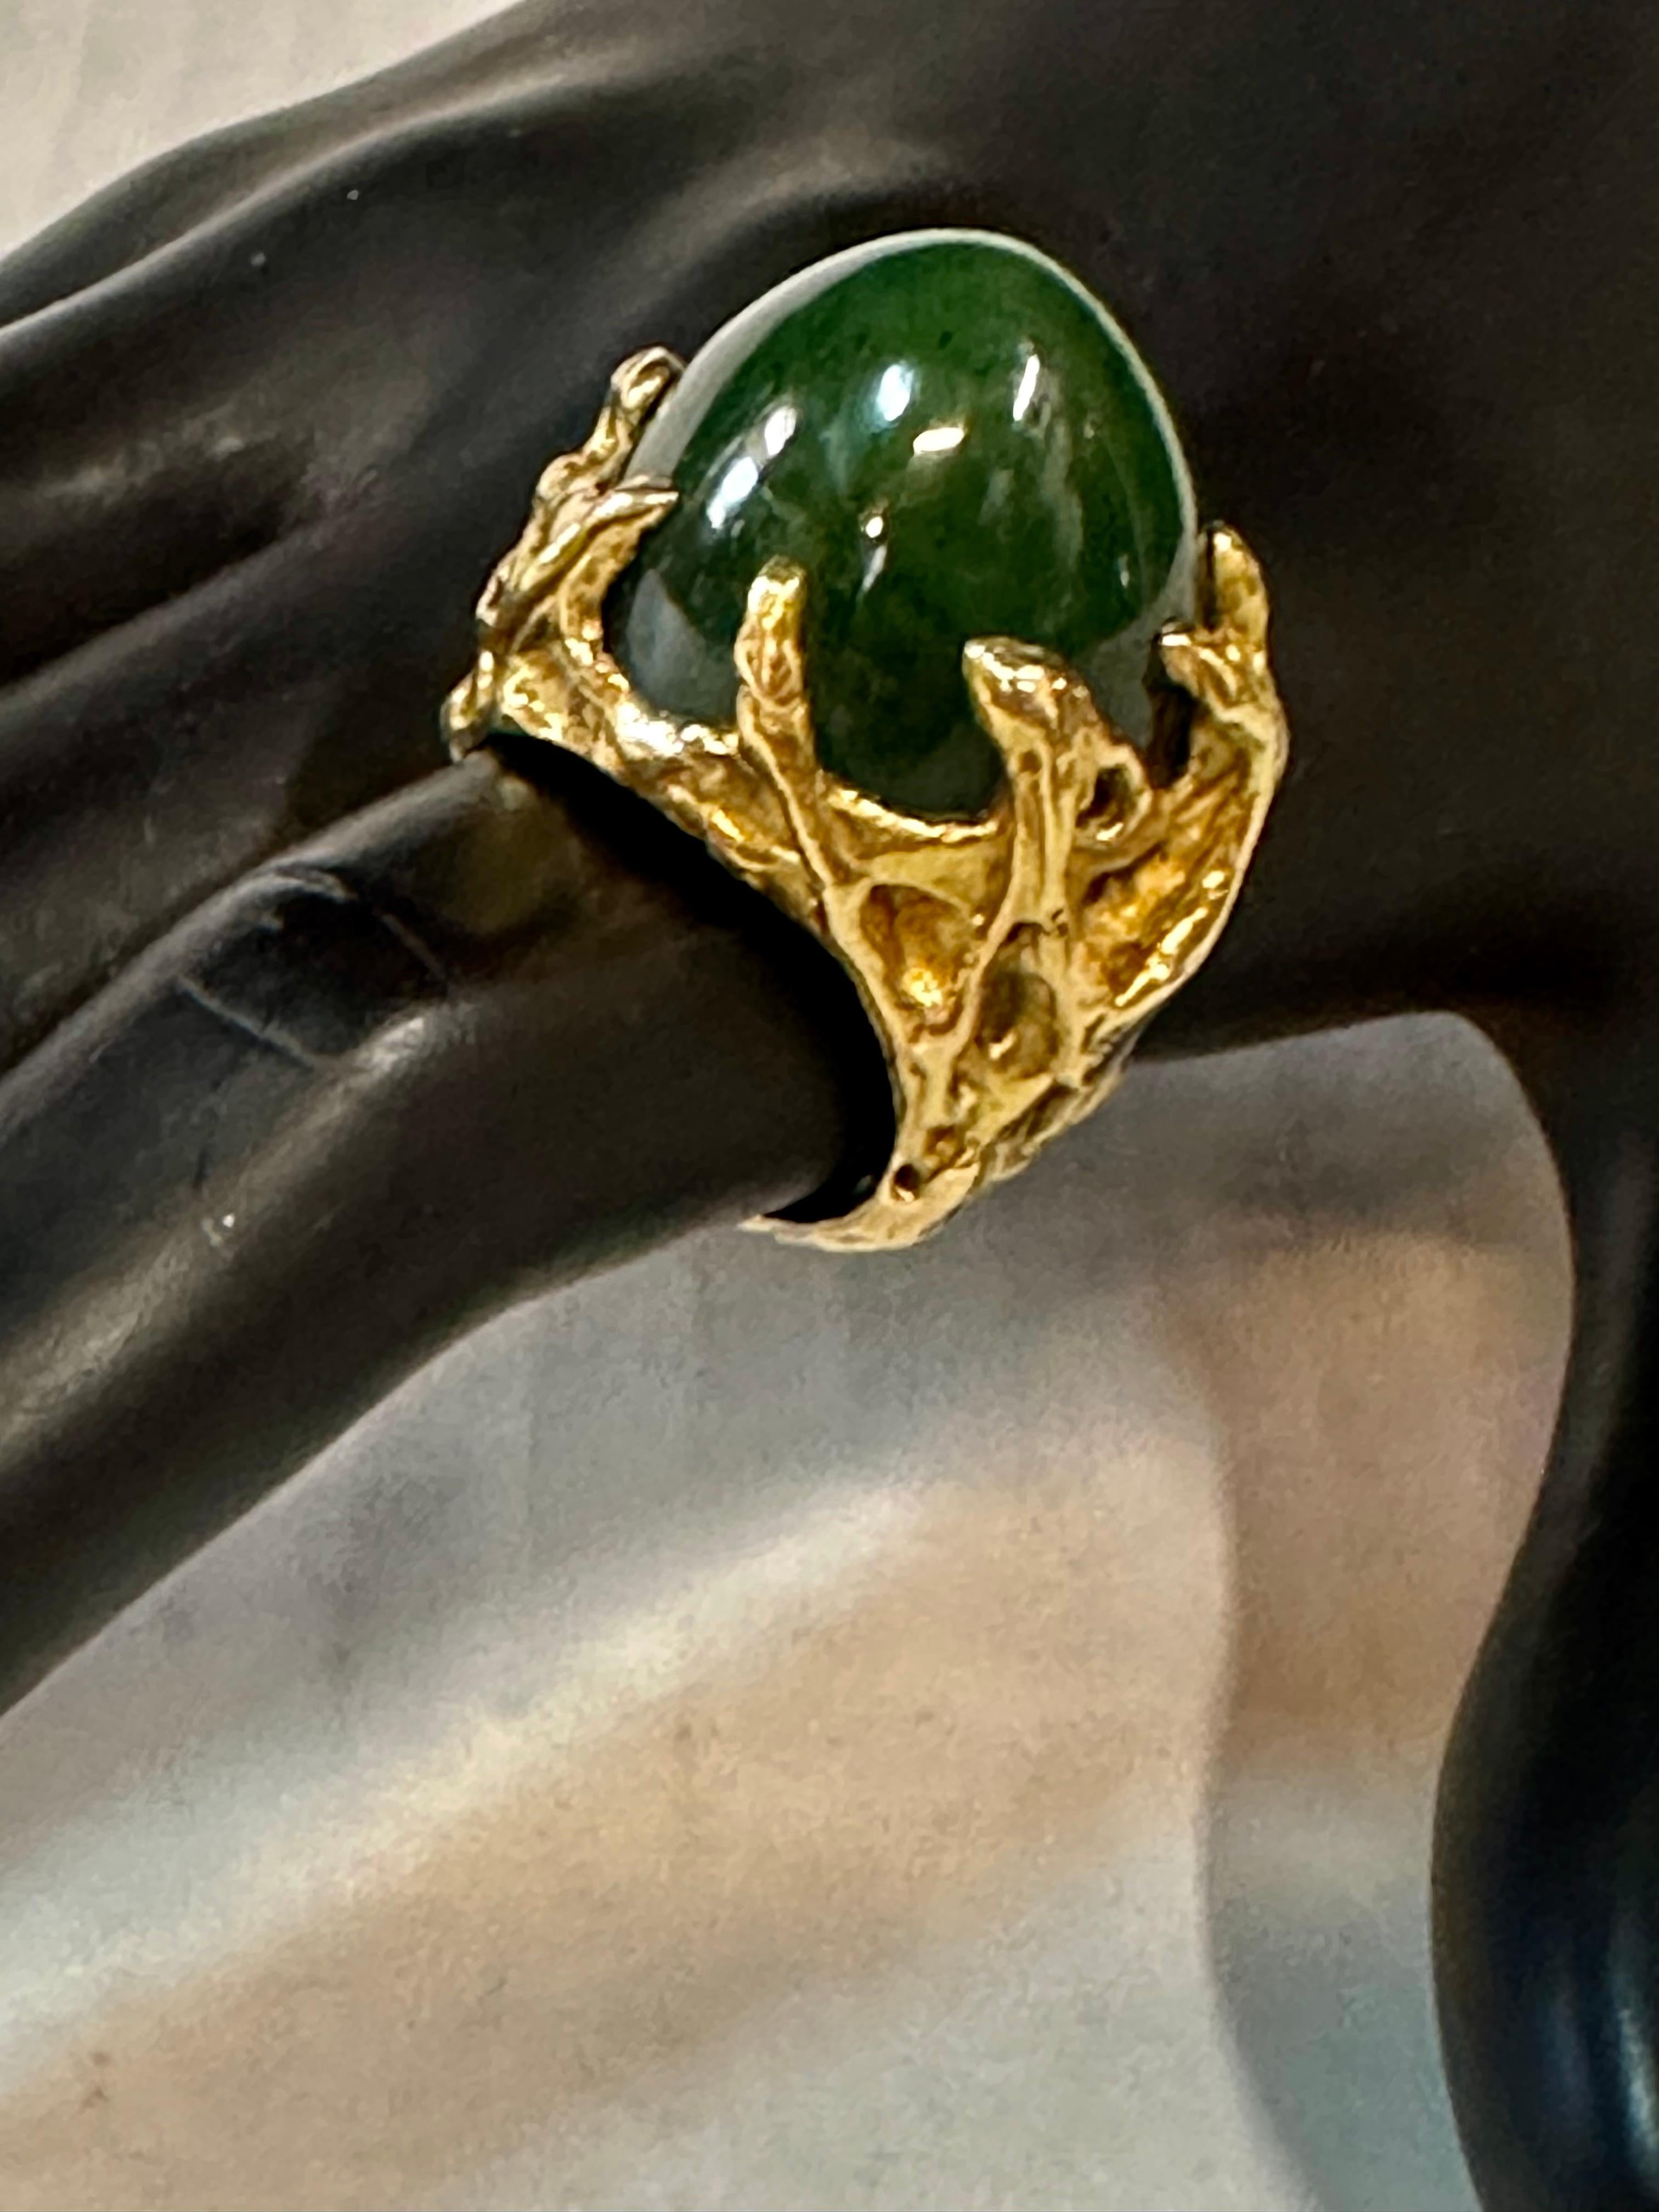 Cette impressionnante bague en or 18 carats et en jade a été conçue et fabriquée sur mesure par les bijoutiers Merrin de New York dans les années 1960. Elle présente une spectaculaire monture sculptée avec un énorme jade vert foncé en forme de dôme.